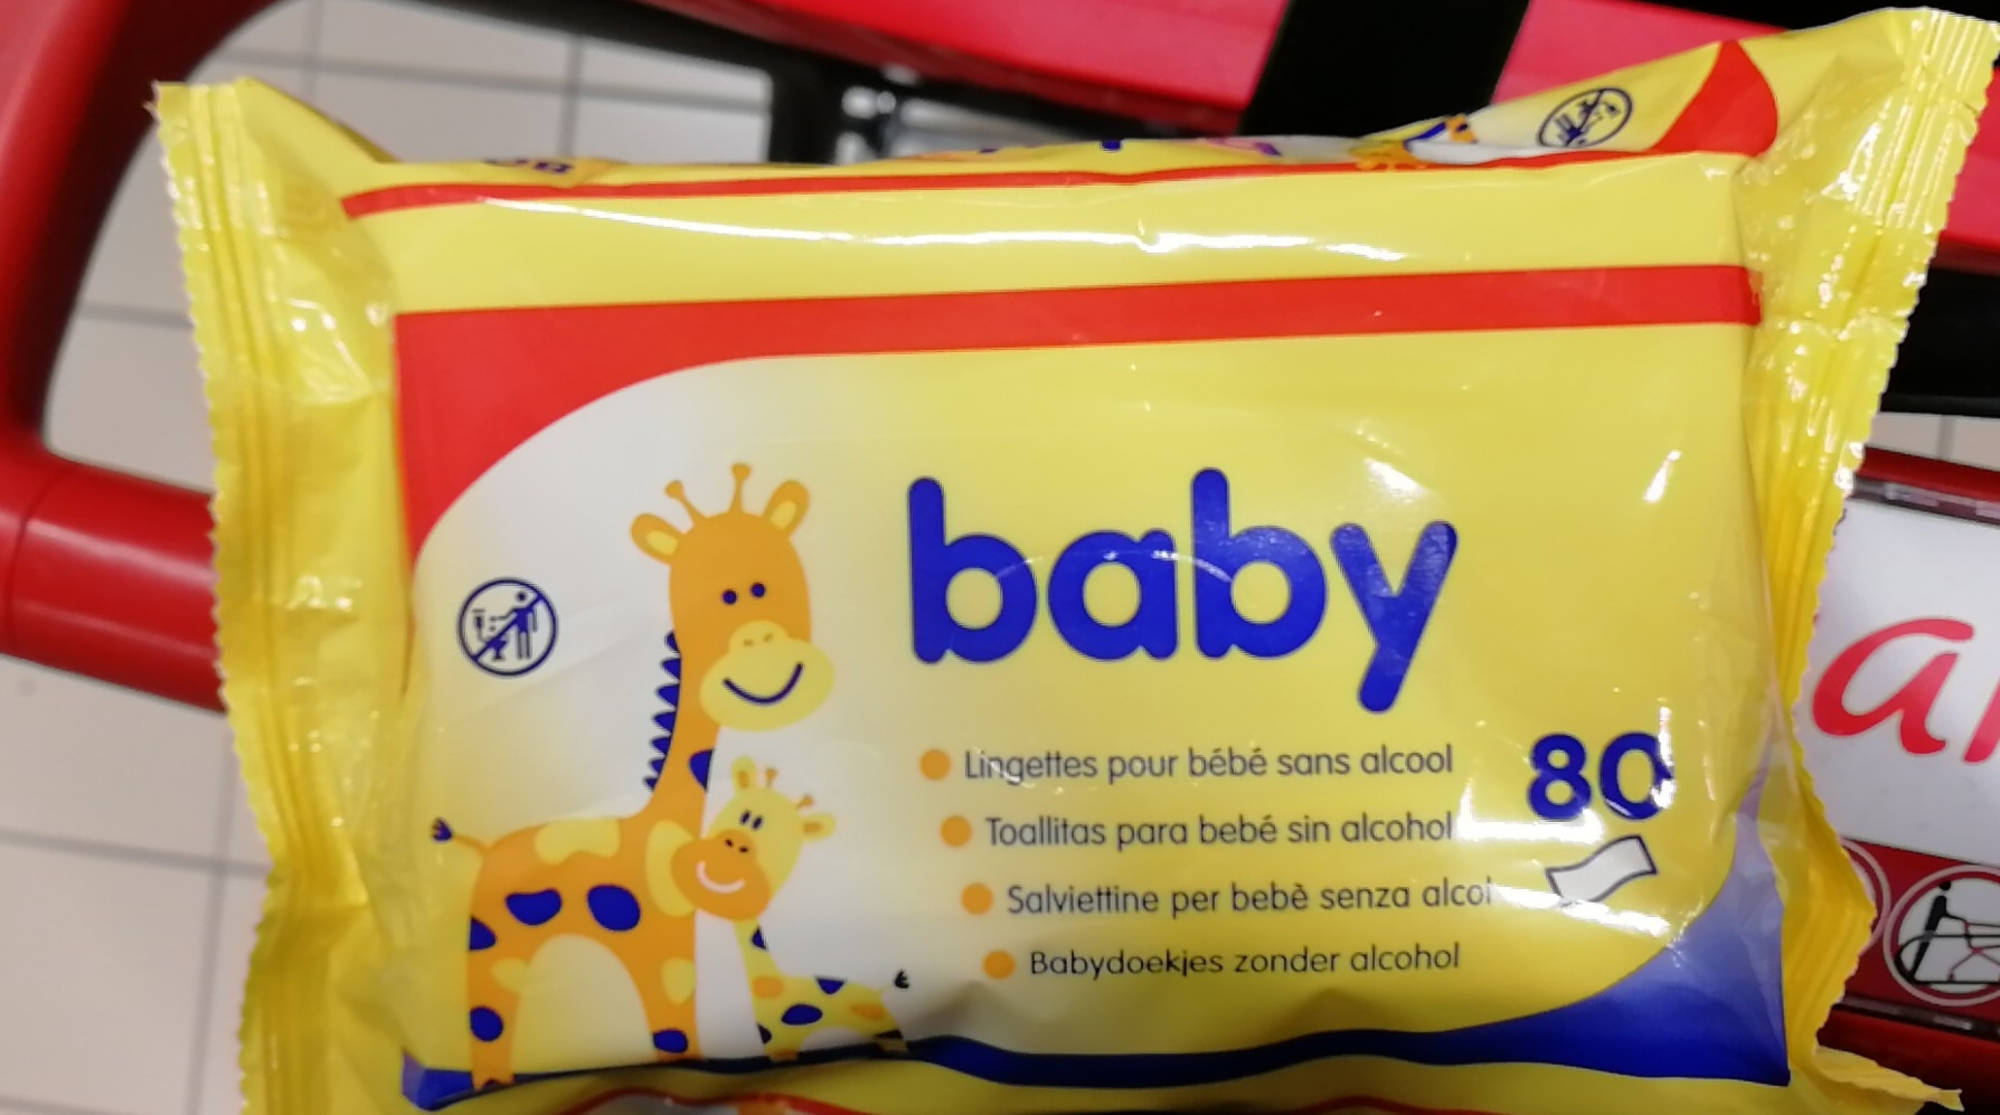 BABY - Lingettes pour bébé sans alcool